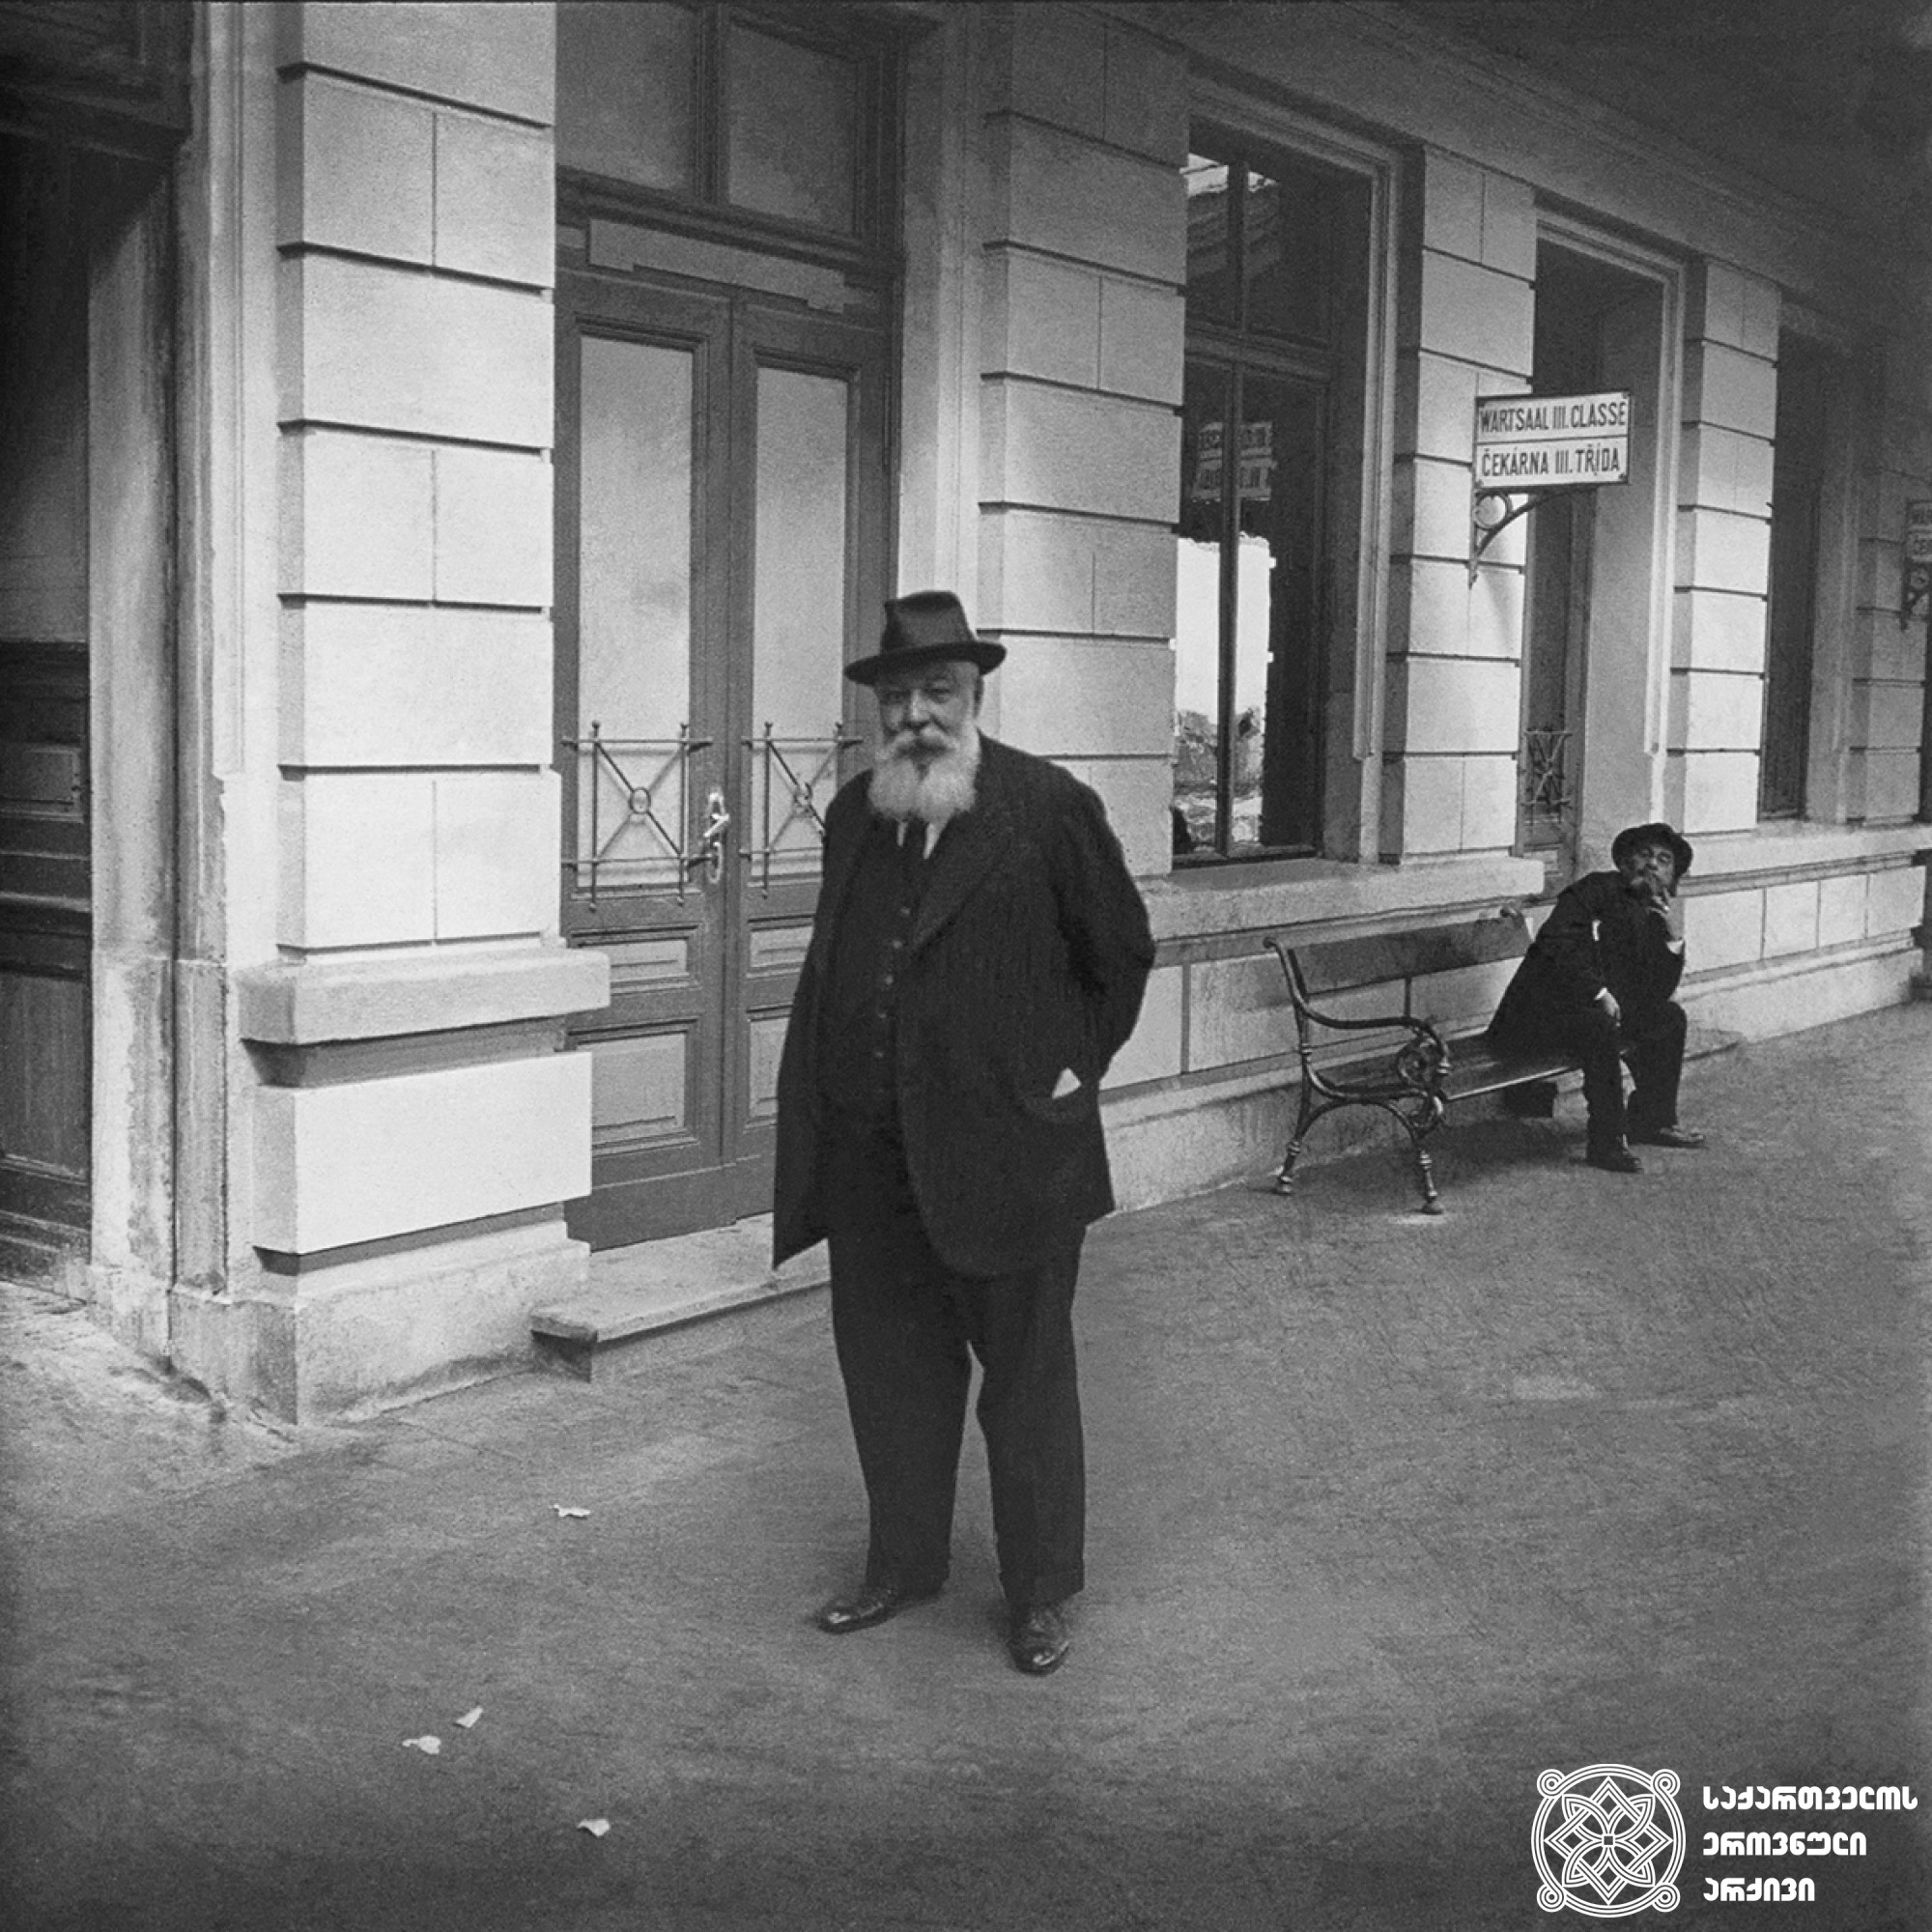 ბარონი ფიტინგოფი მატარებლის სადგურში. მარიენბადი, ჩეხეთი <br>
1912 წელი <br>
გიგლო ყარალაშვილის კოლექცია  <br>

Baron Fittingoff at the train station. Marienbad, Czech Republic <br>
1912 <br>
Giglo Karalashvili collection <br>